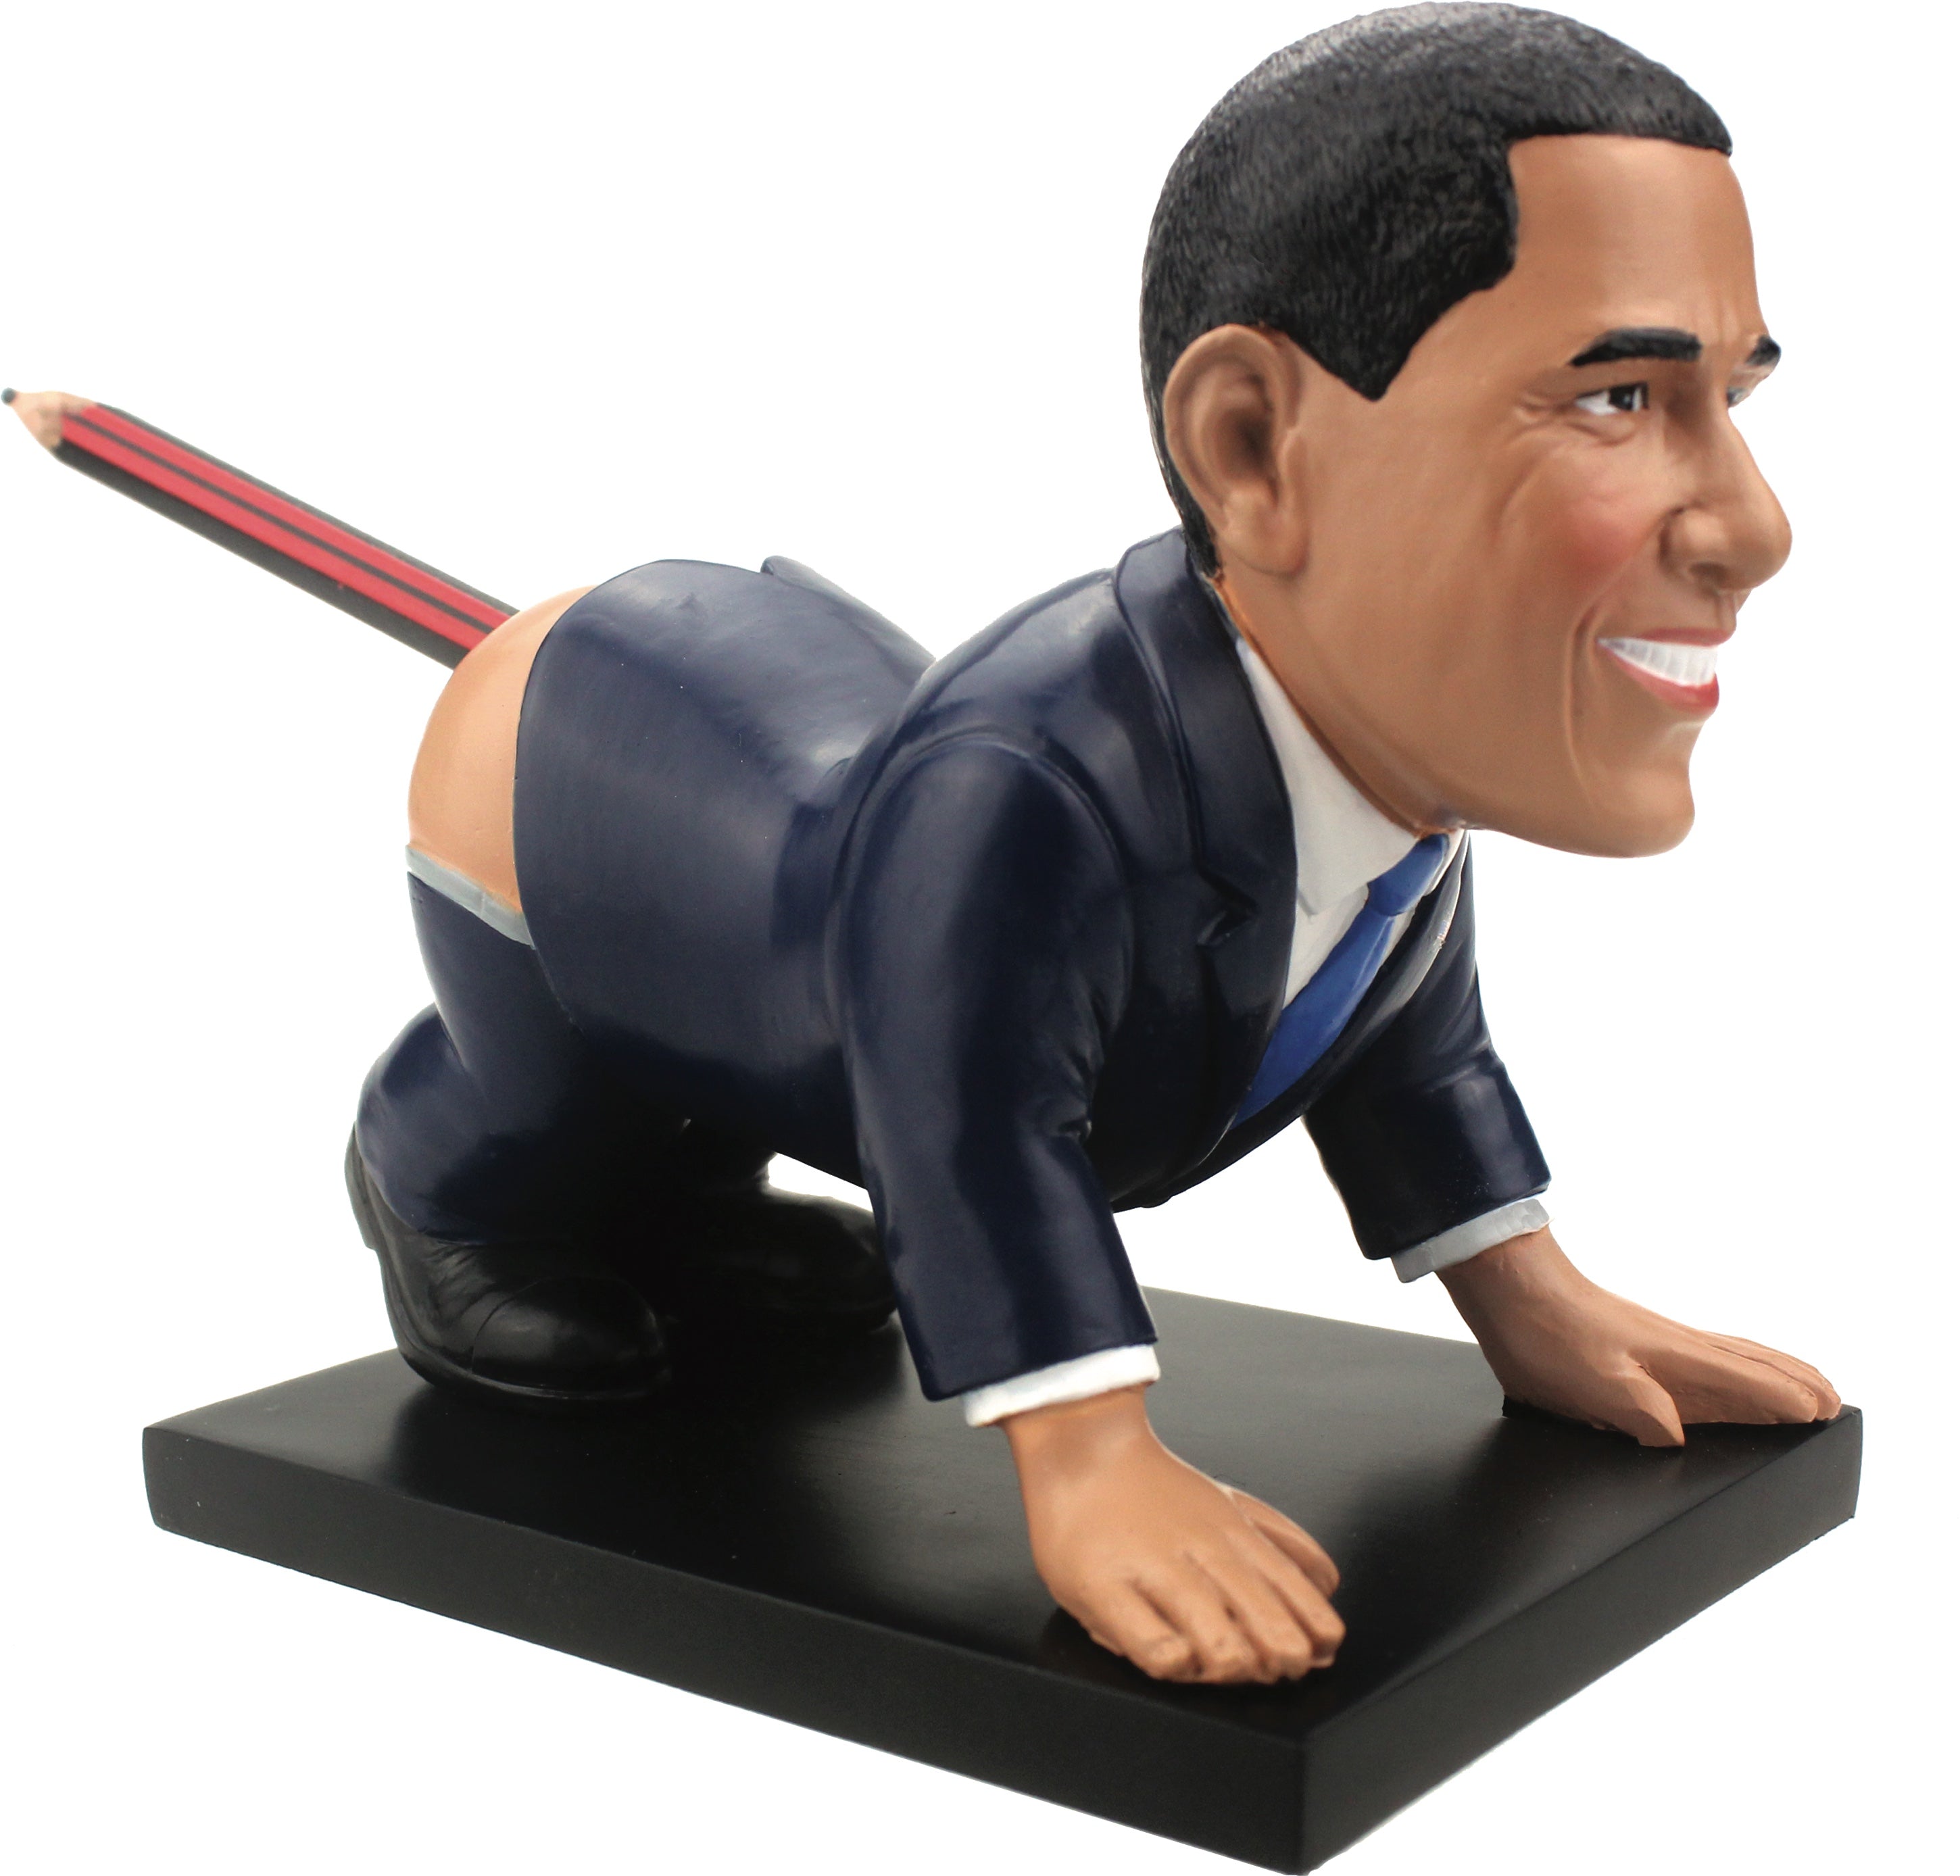 Buttock Obama - Dump-a-Trump